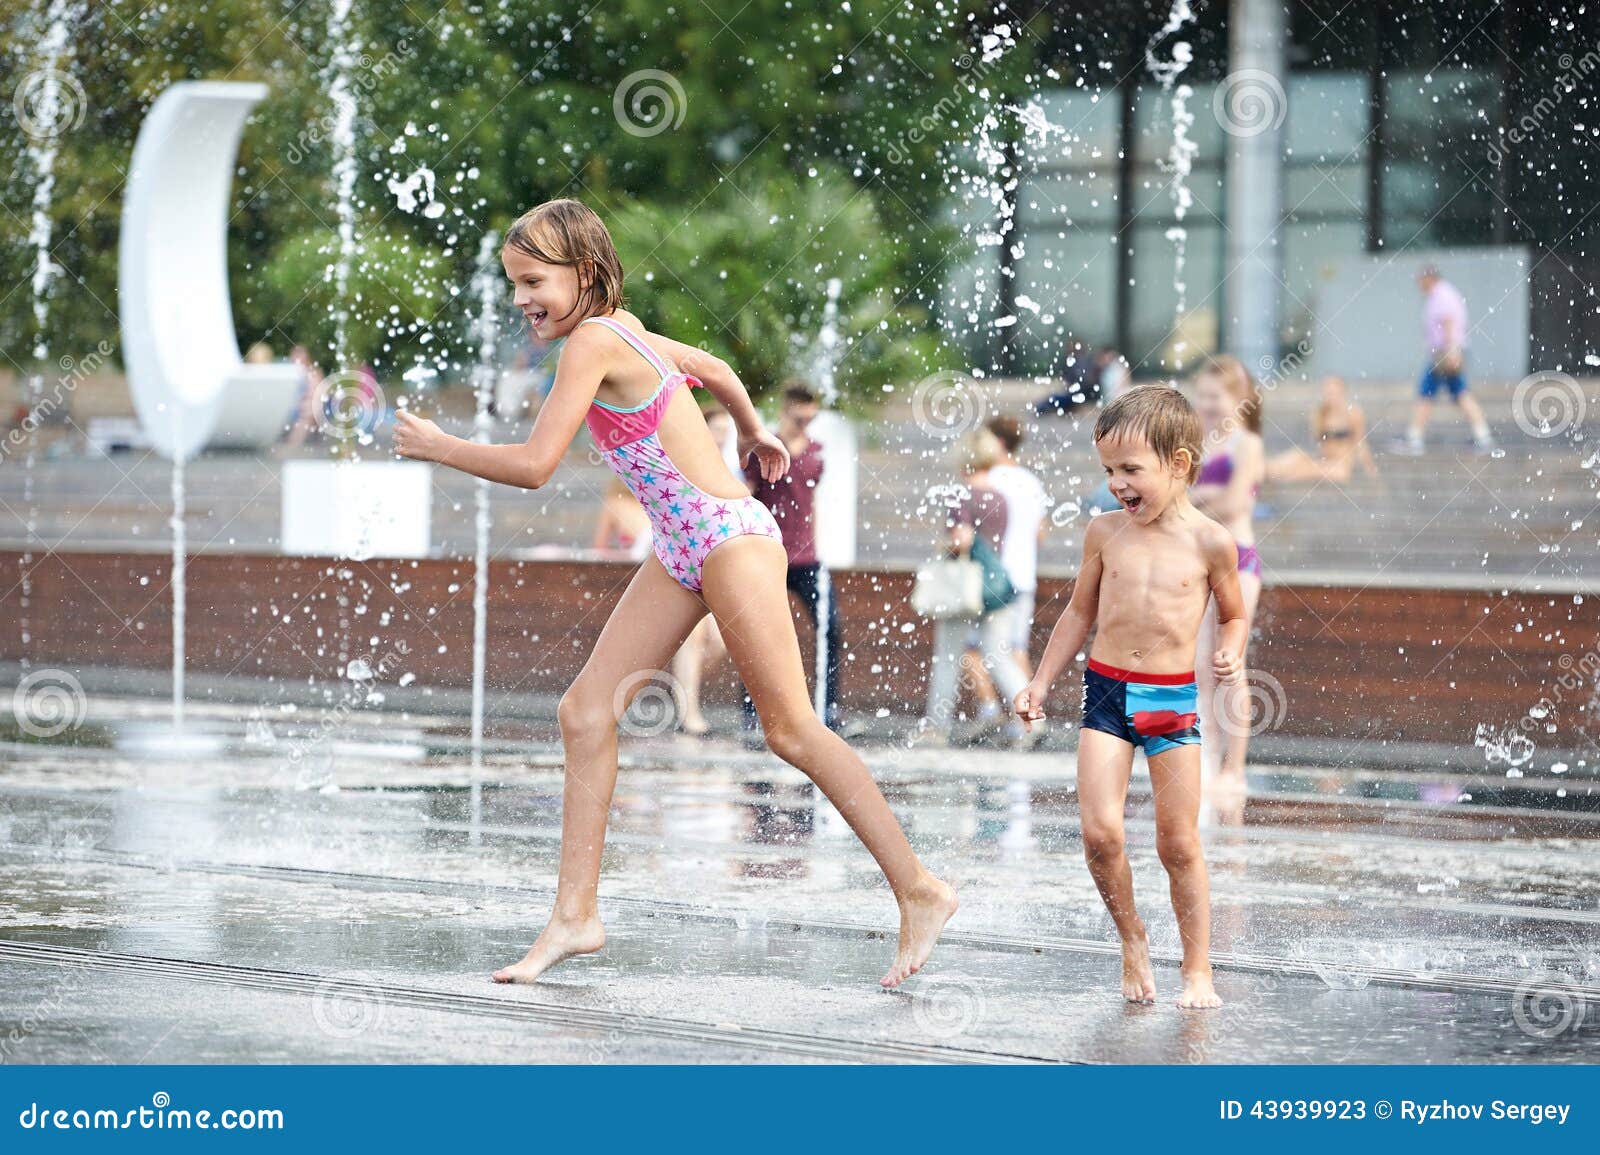 Купалась белье. Дети купаются в фонтане. Купание в фонтане. В фонтане в купальнике. Девочка купается в фонтане.